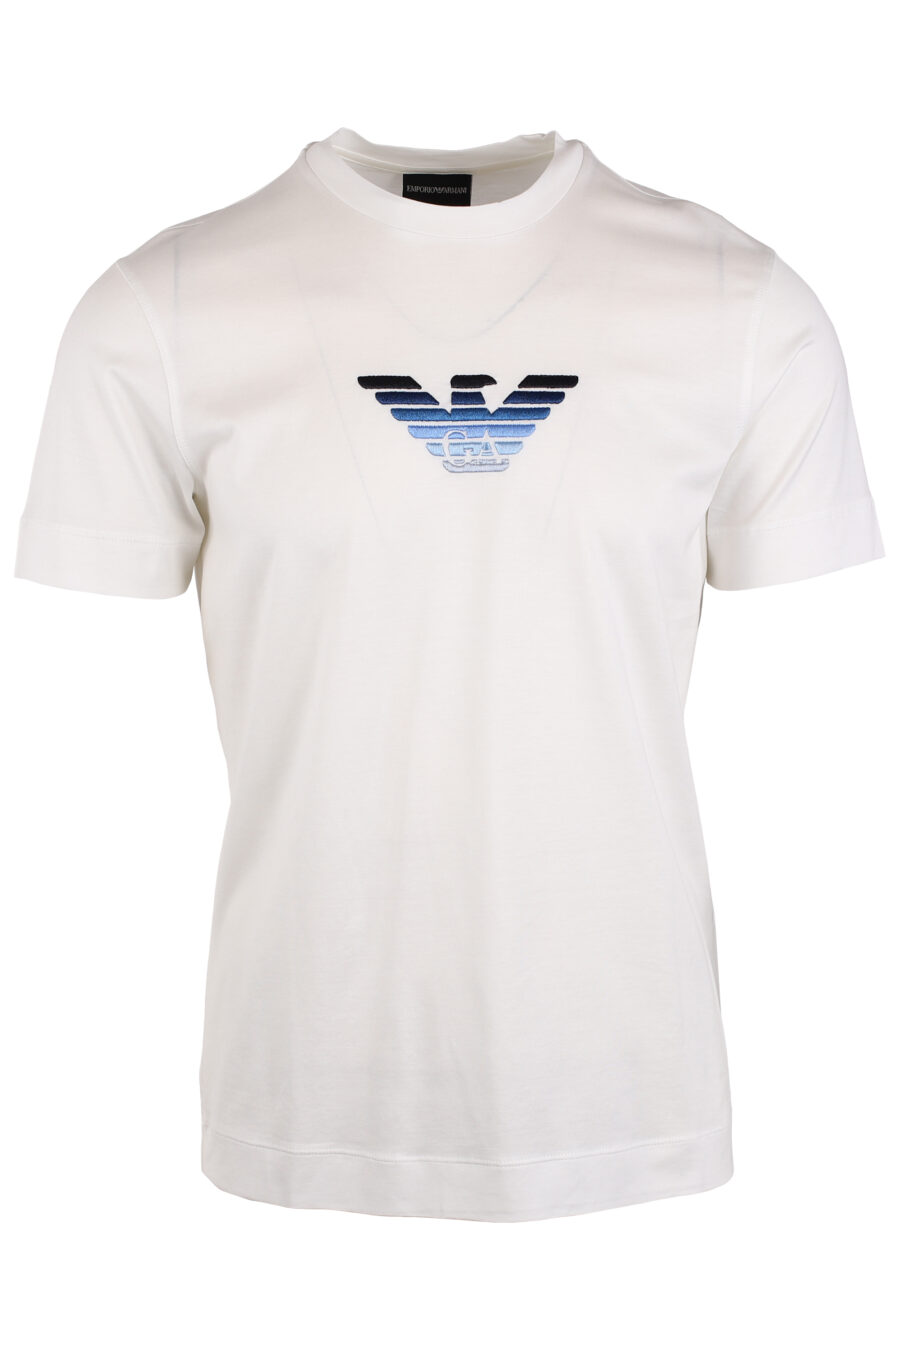 Camiseta blanca con minilogo águila en degradé azul - IMG 4054